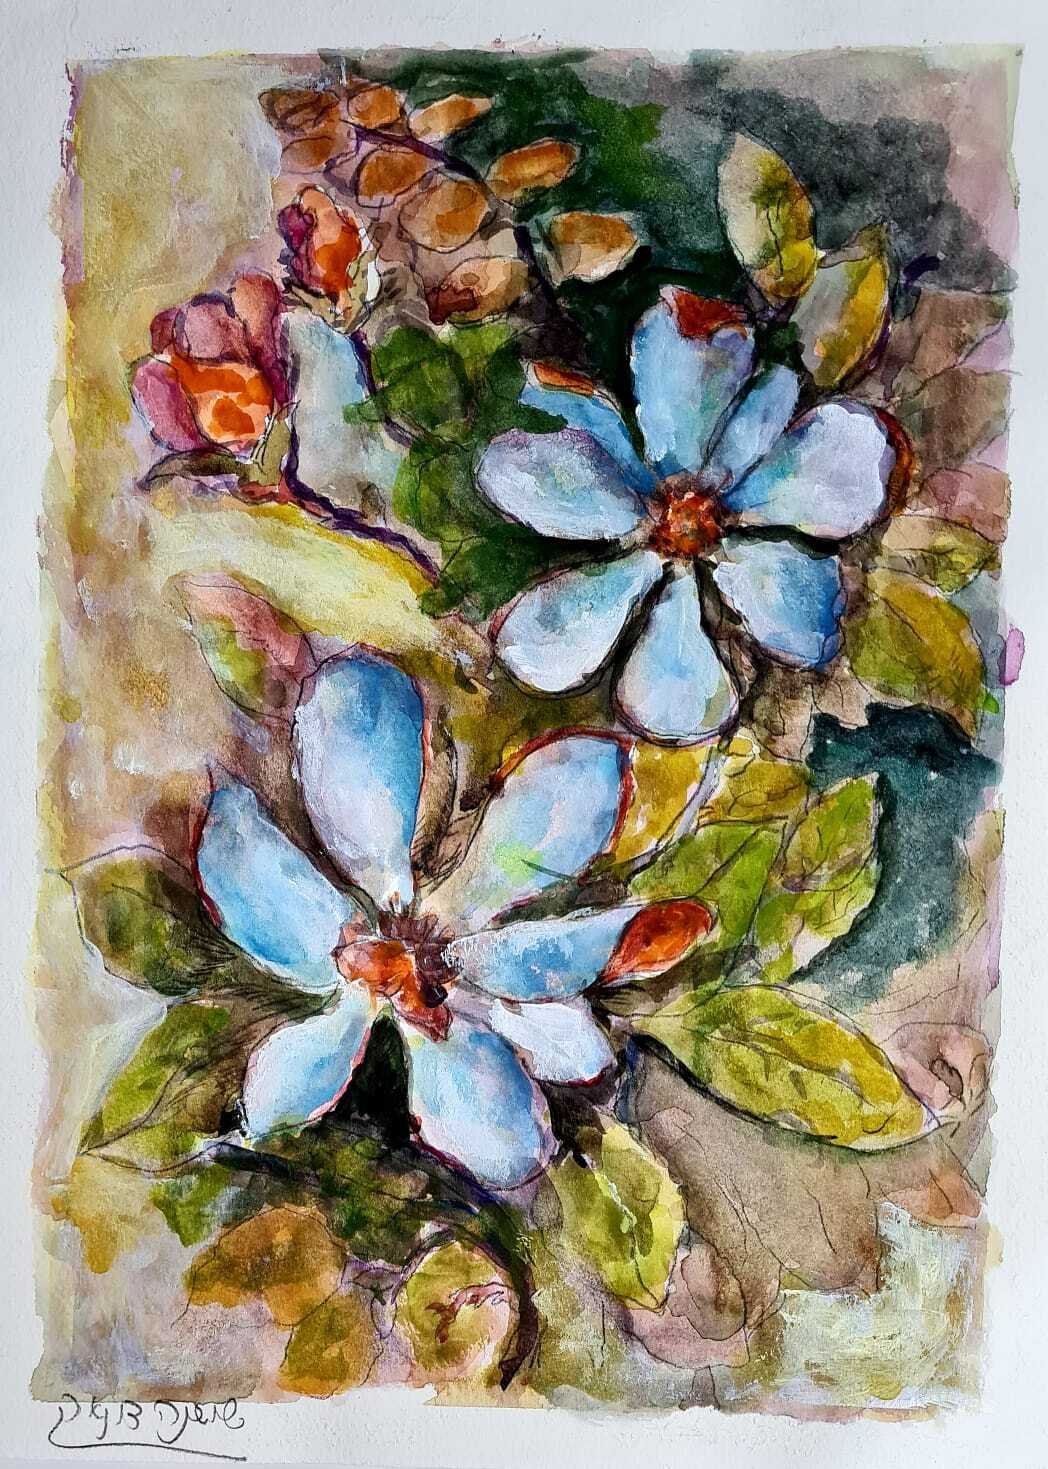 ציור מס. 59 - "פרחי אביב"